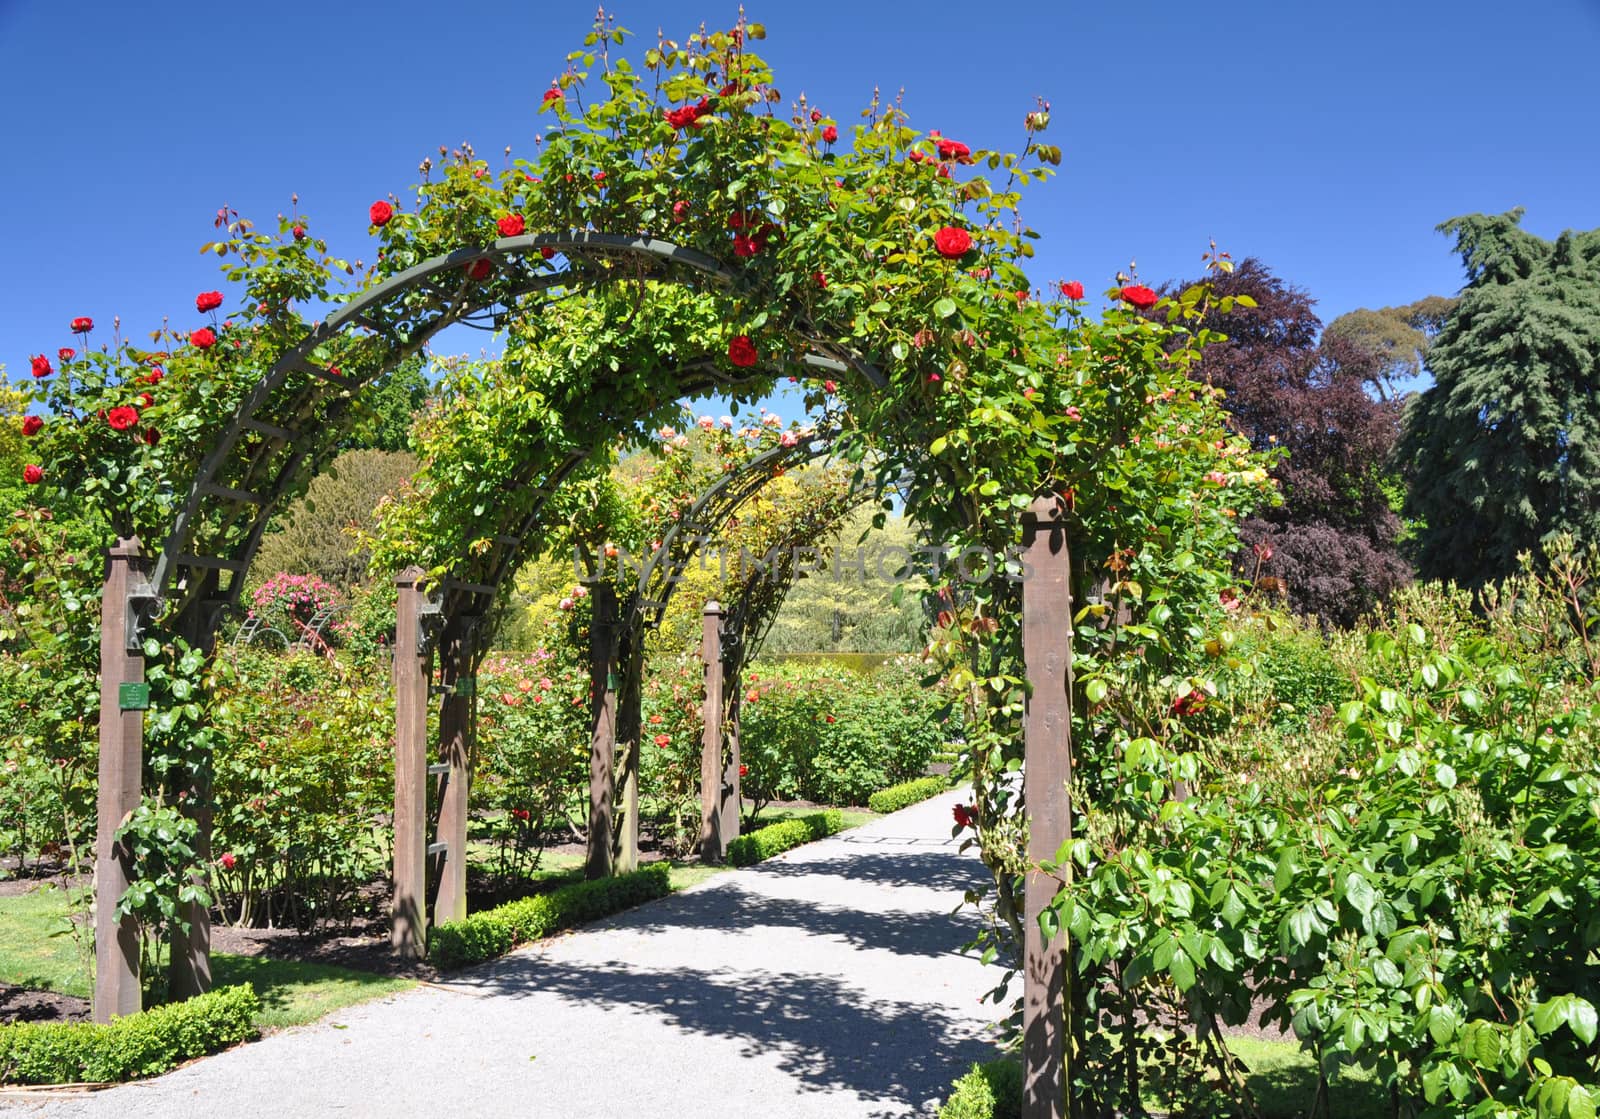 Christchurch Botanical Gardens, New Zealand by dpe123